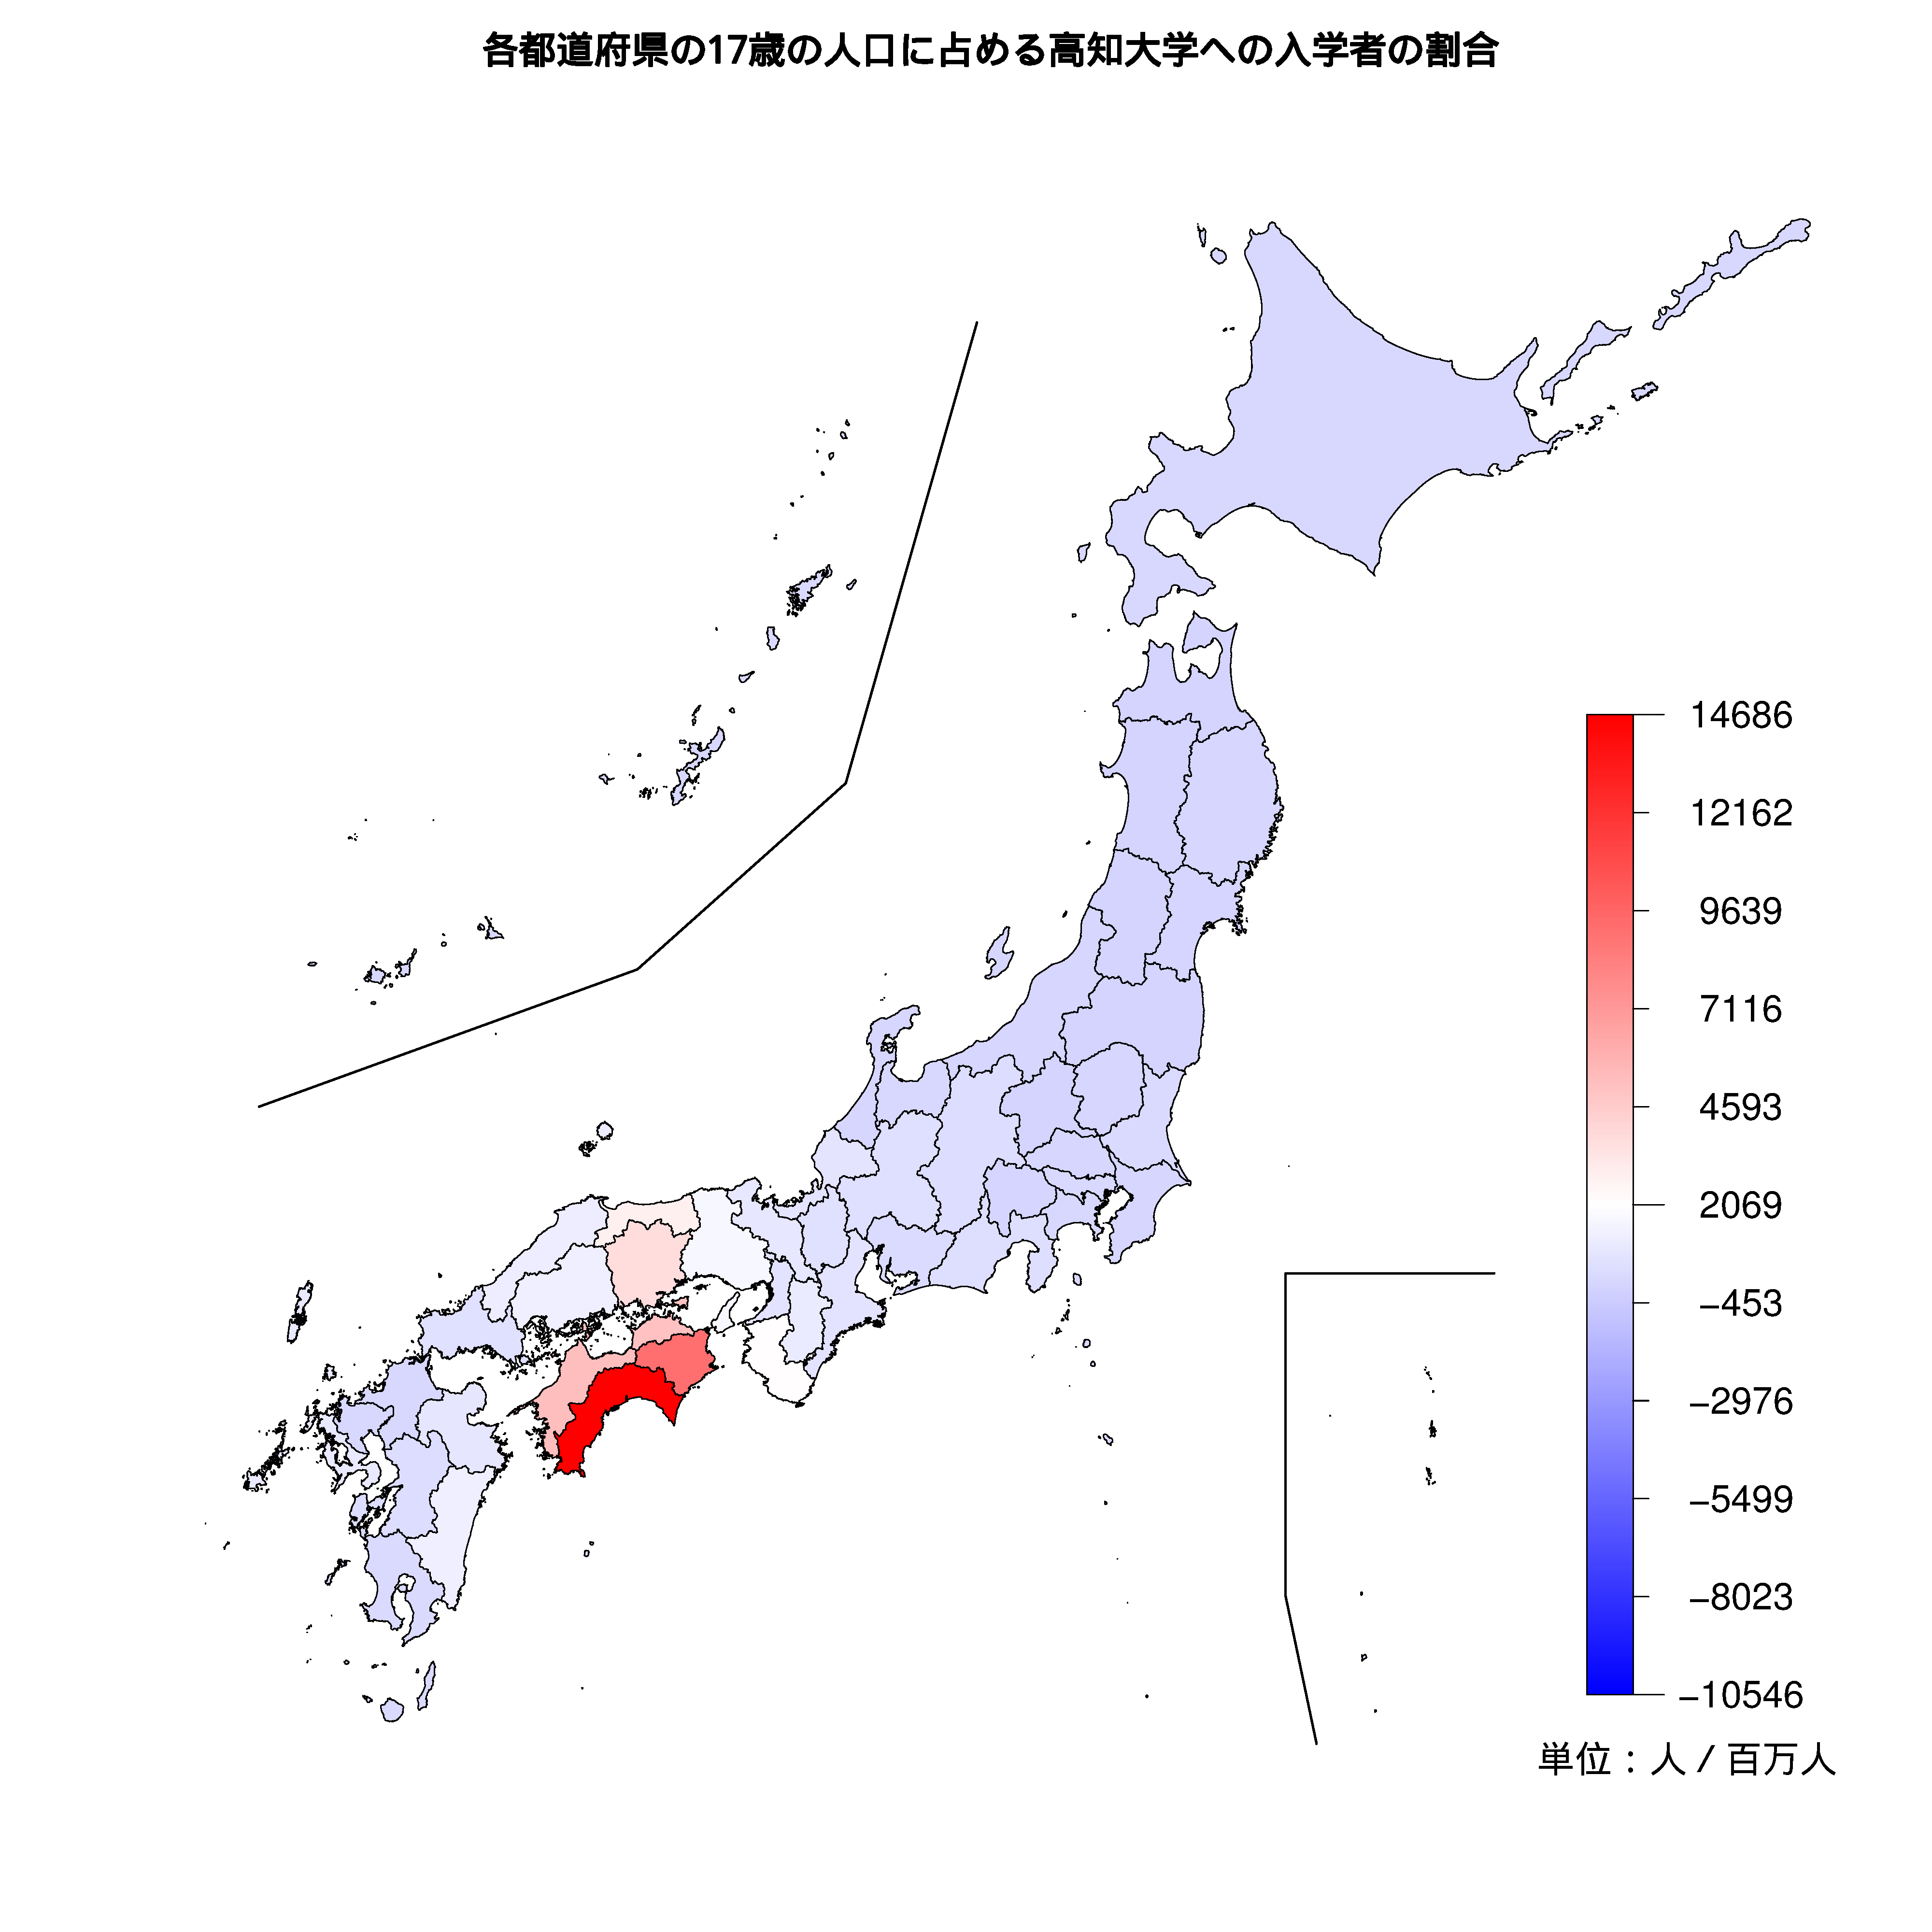 高知大学への入学者が多い都道府県の色分け地図